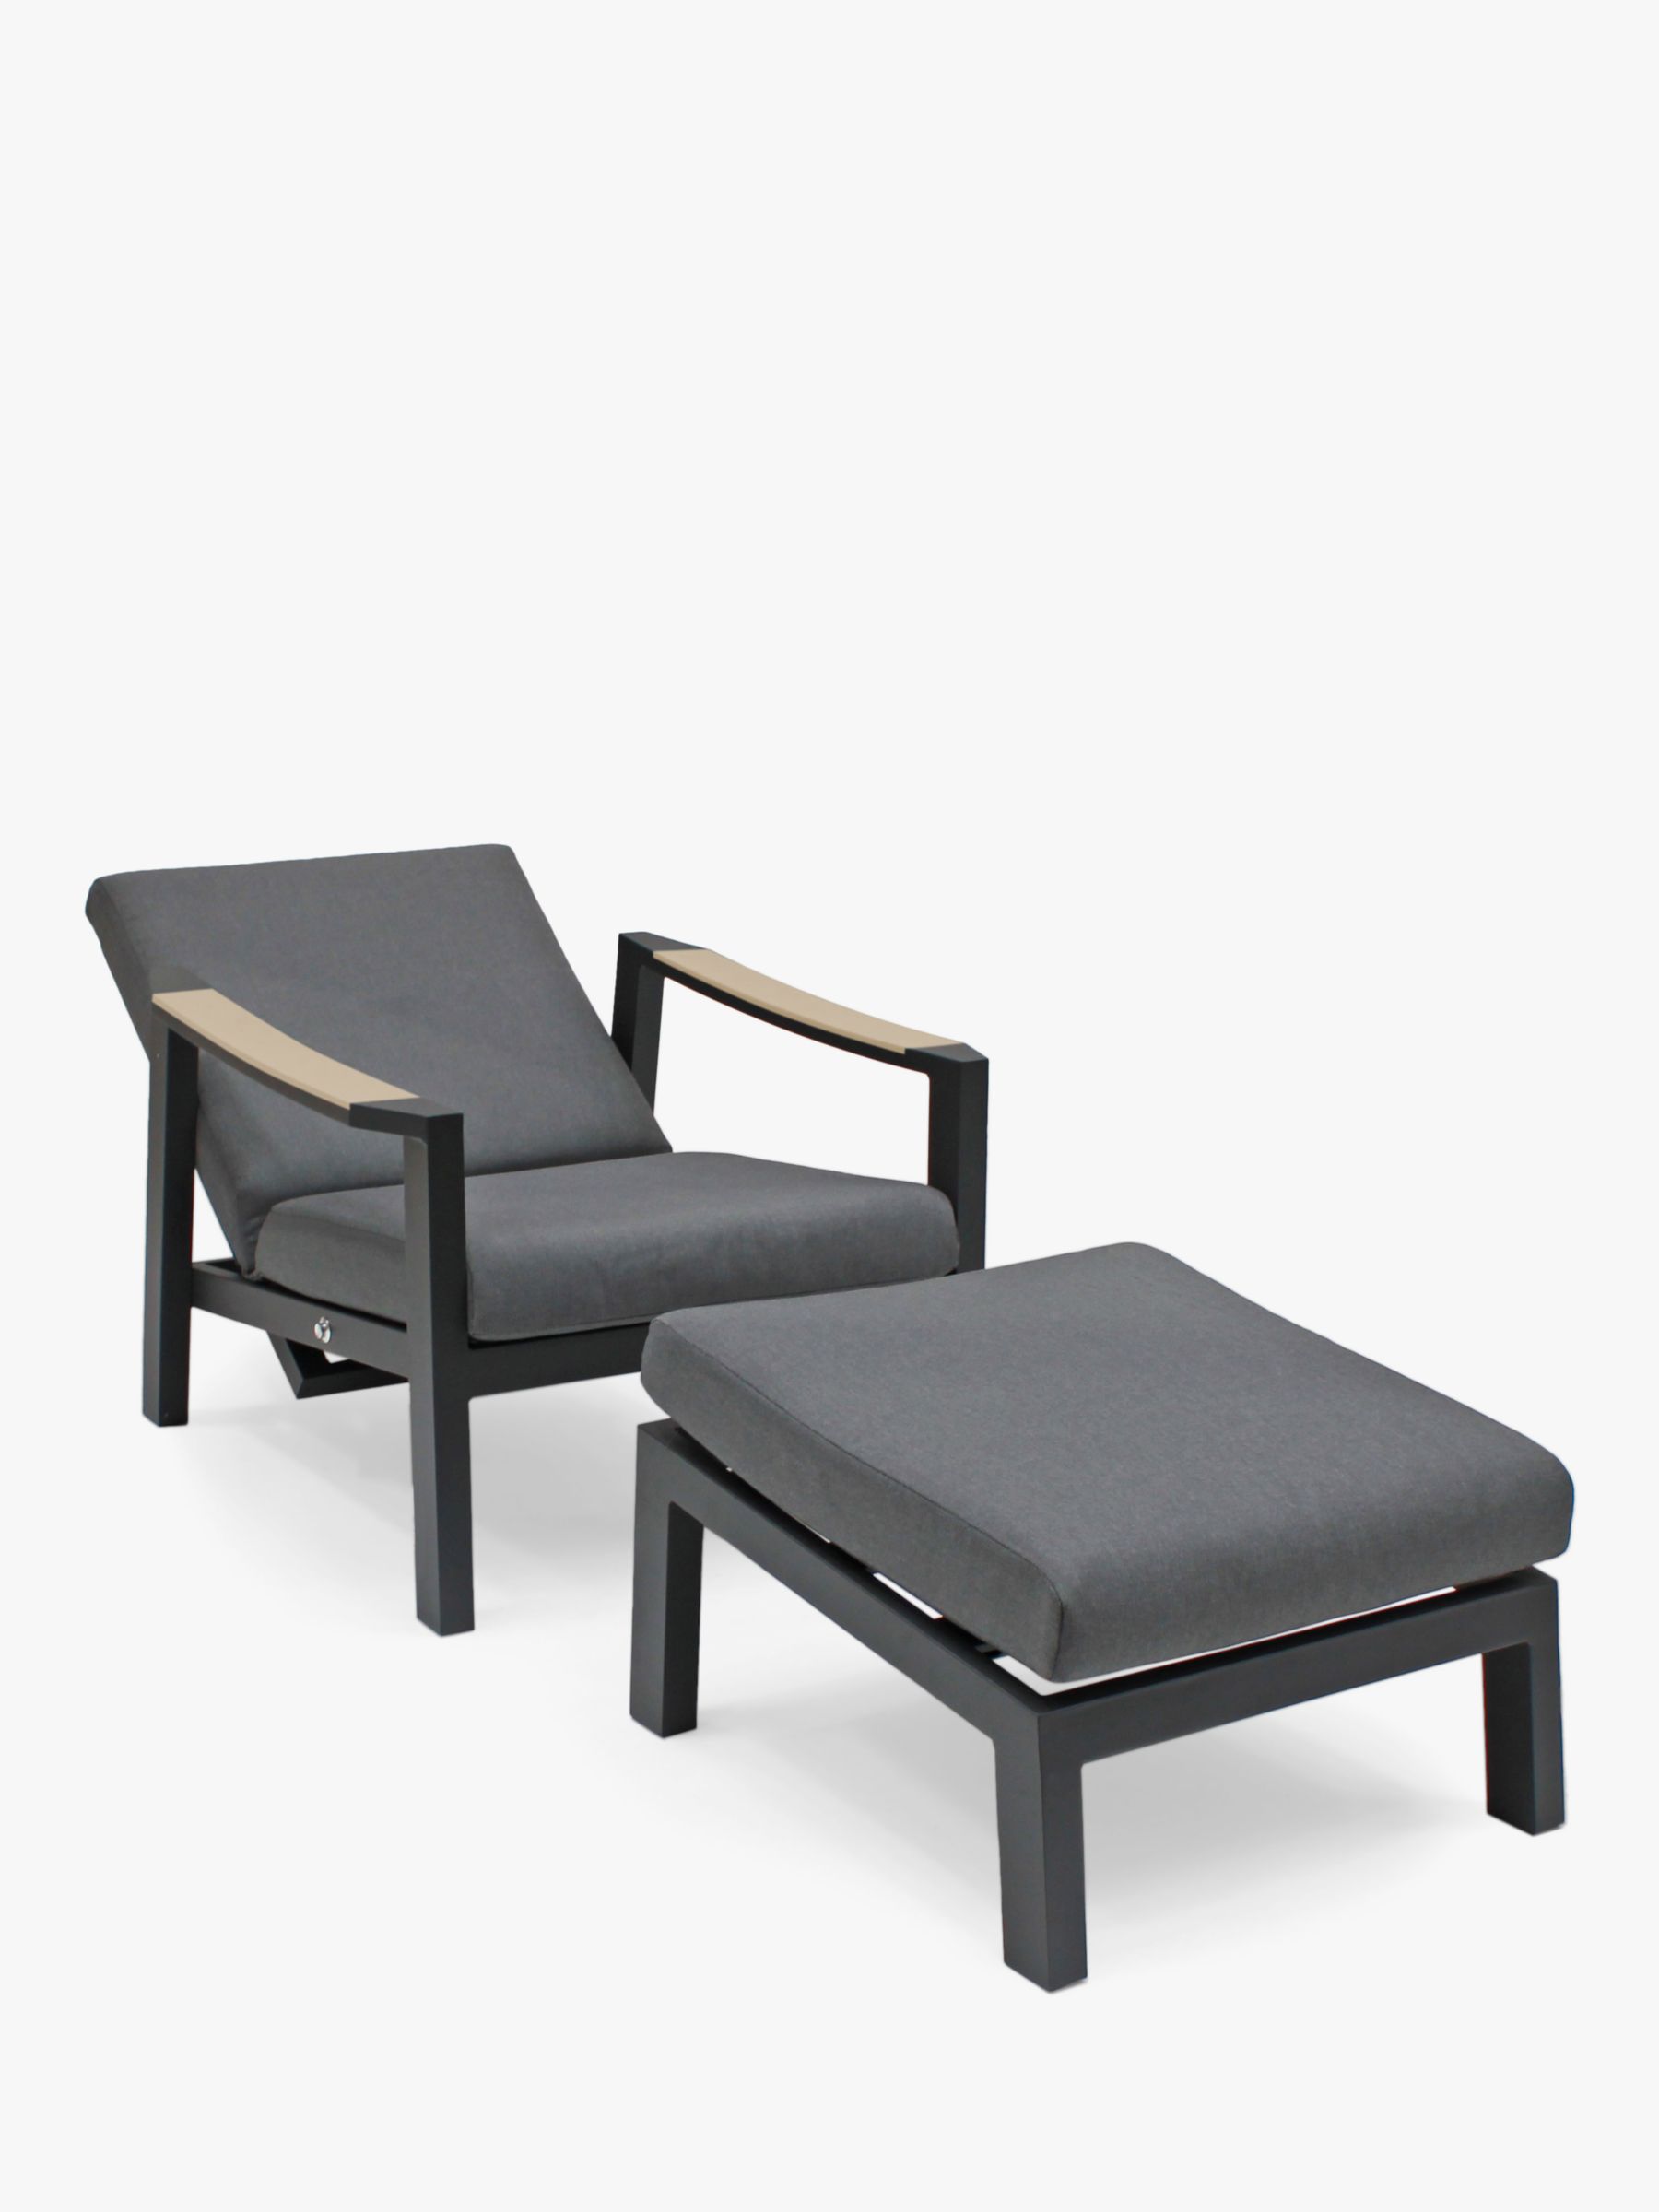 Photo of Kettler elba garden relaxer reclining chair & footstool fsc-certified -teak wood- charcoal/natural